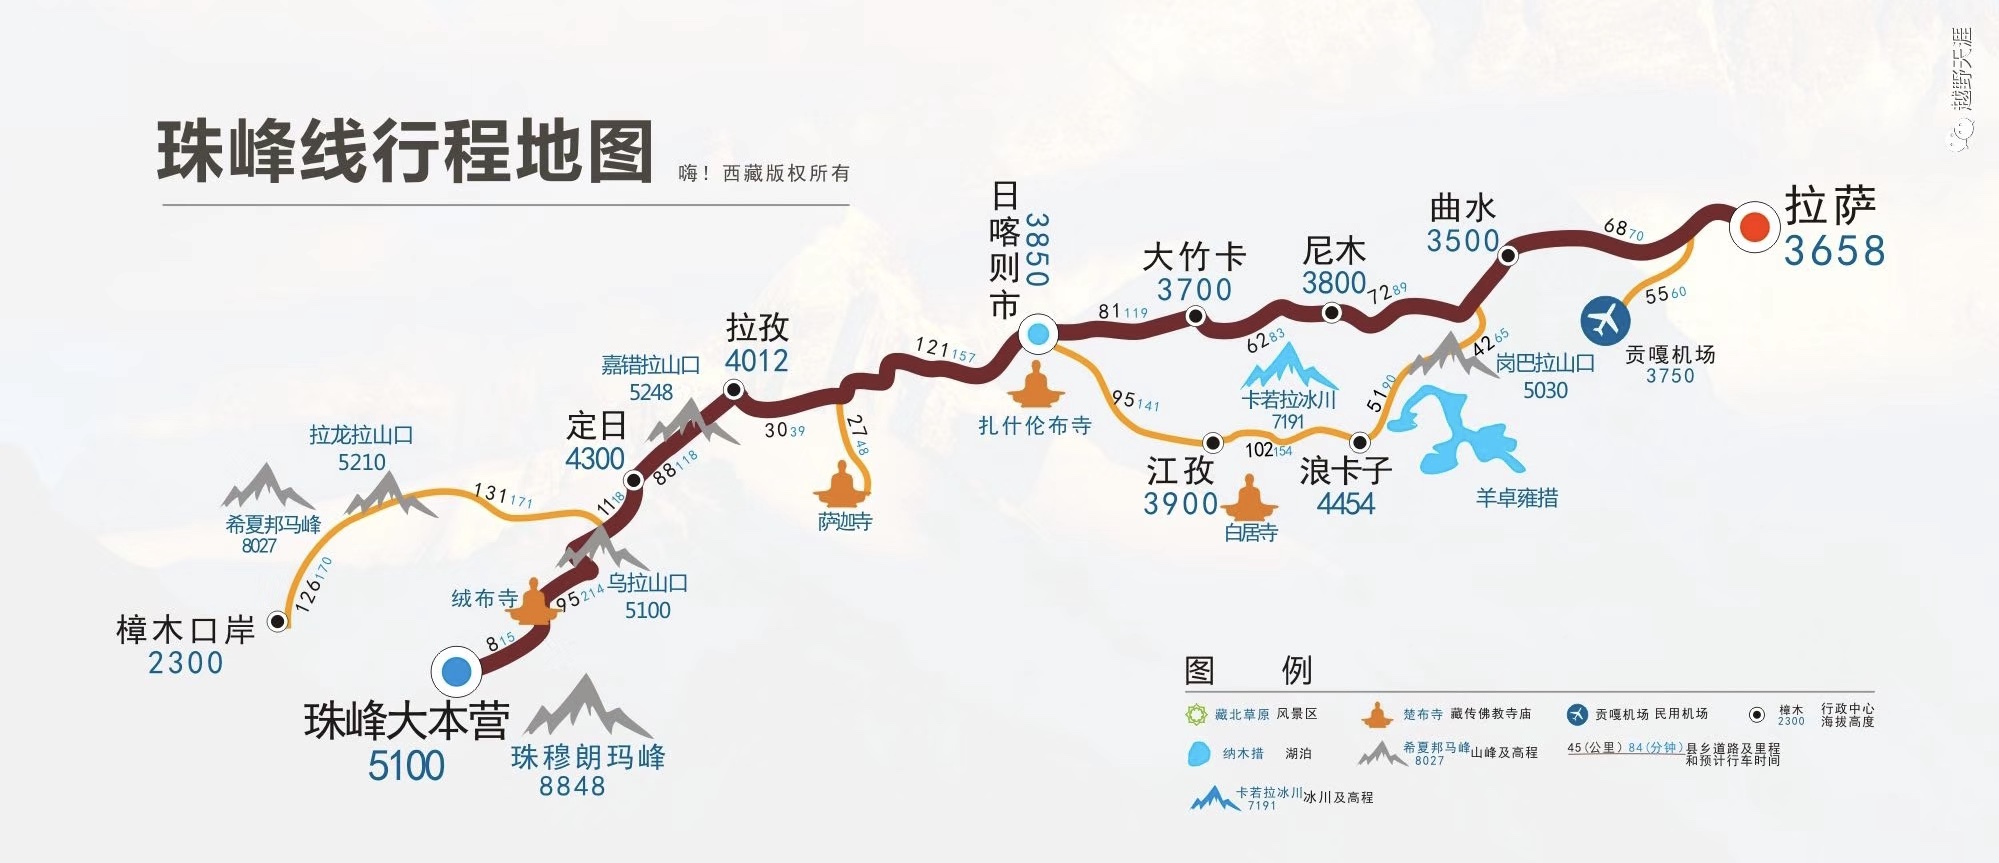 穿越藏域川藏线青藏线行程分享